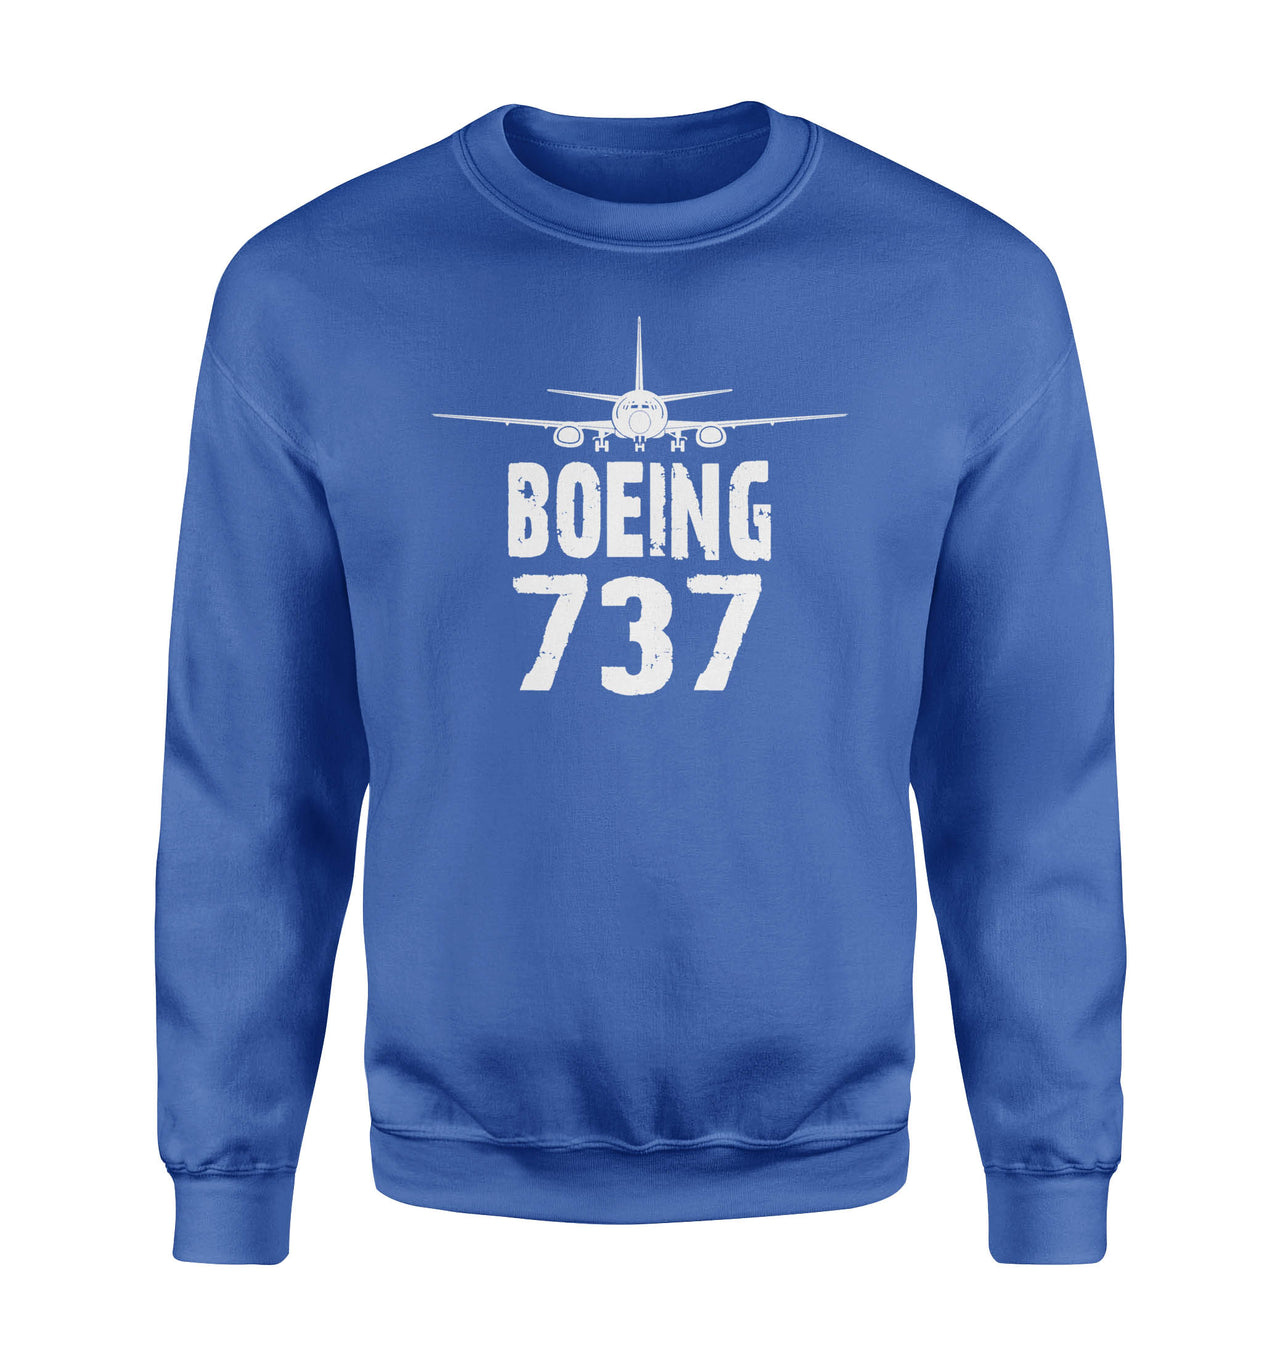 Boeing 737 & Plane Designed Sweatshirts